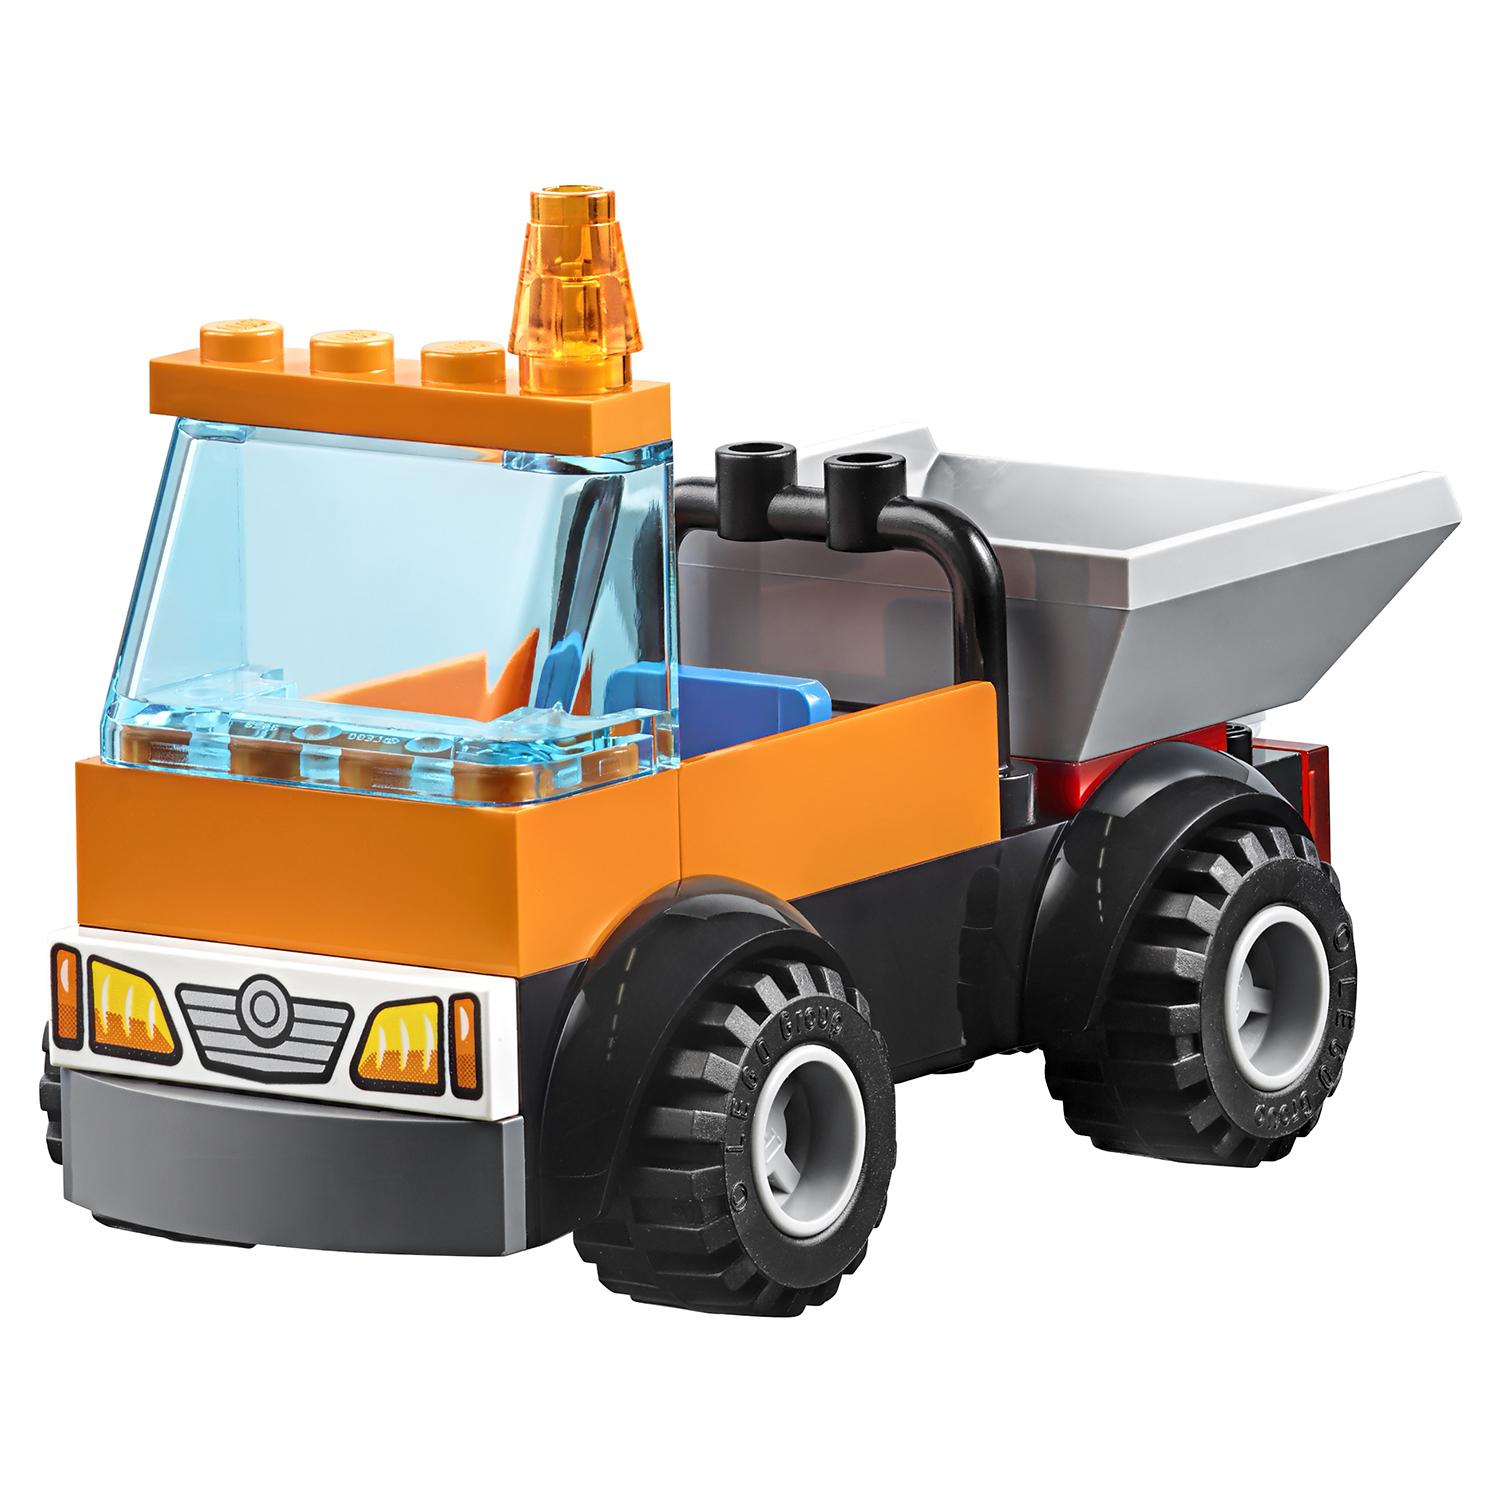 Lego Juniors 10750 Грузовик дорожной службы